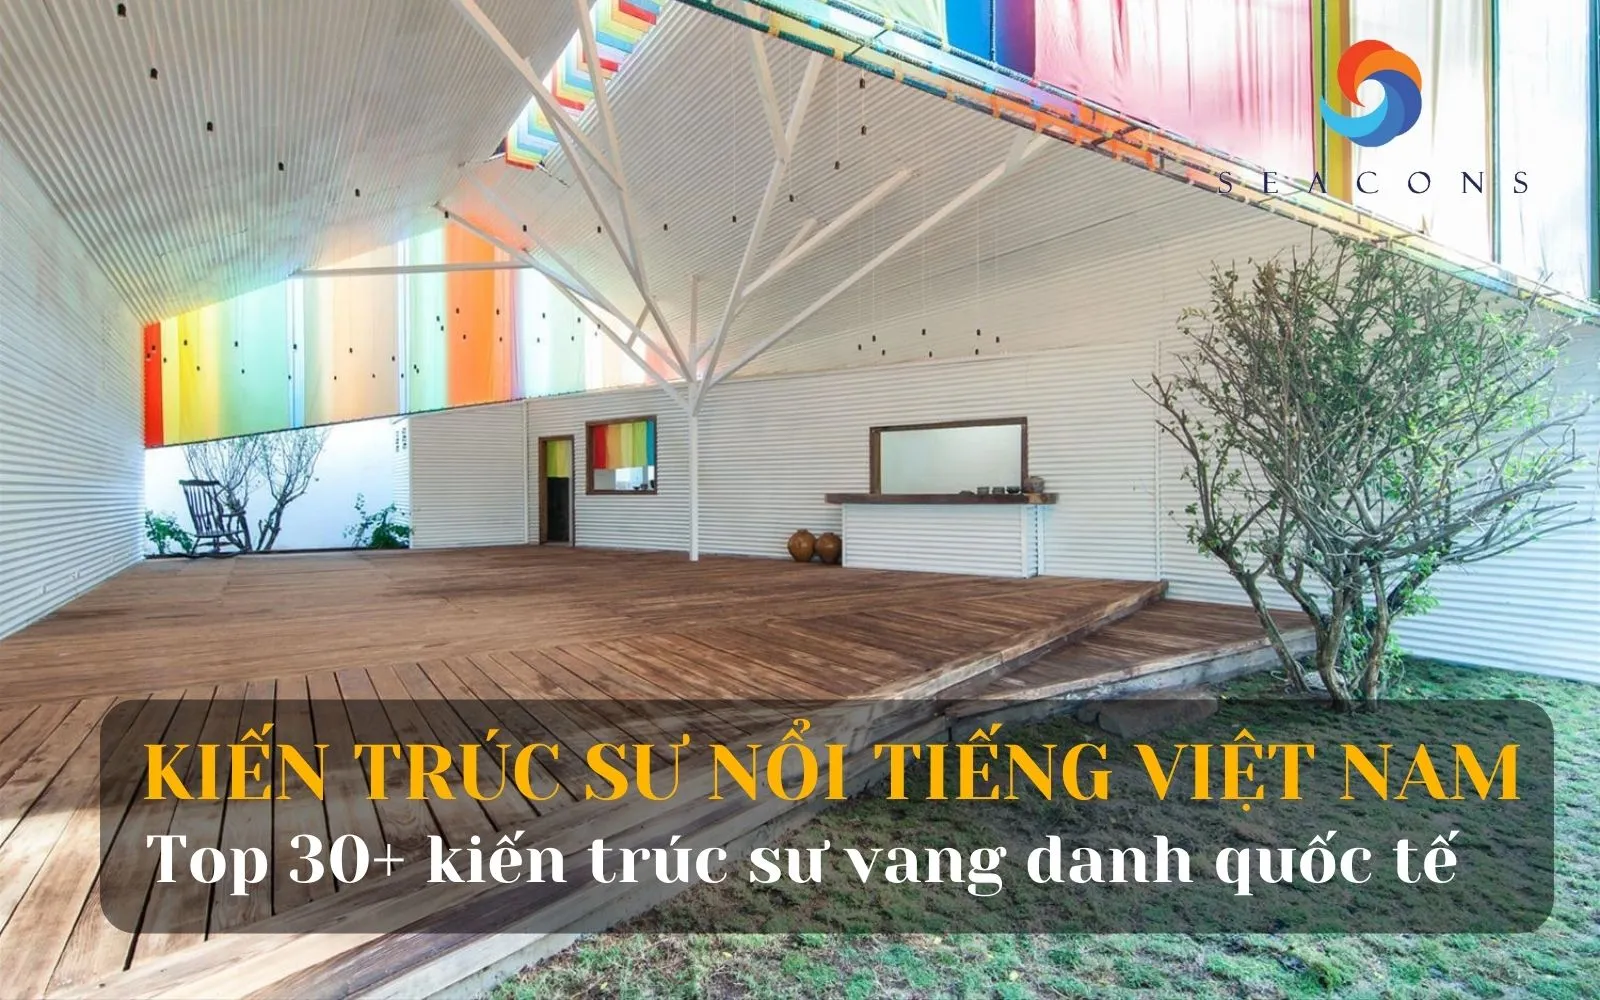 Top 30+ Kiến trúc sư nổi tiếng Việt Nam điểm mặt trên những tờ báo uy tín quốc tế